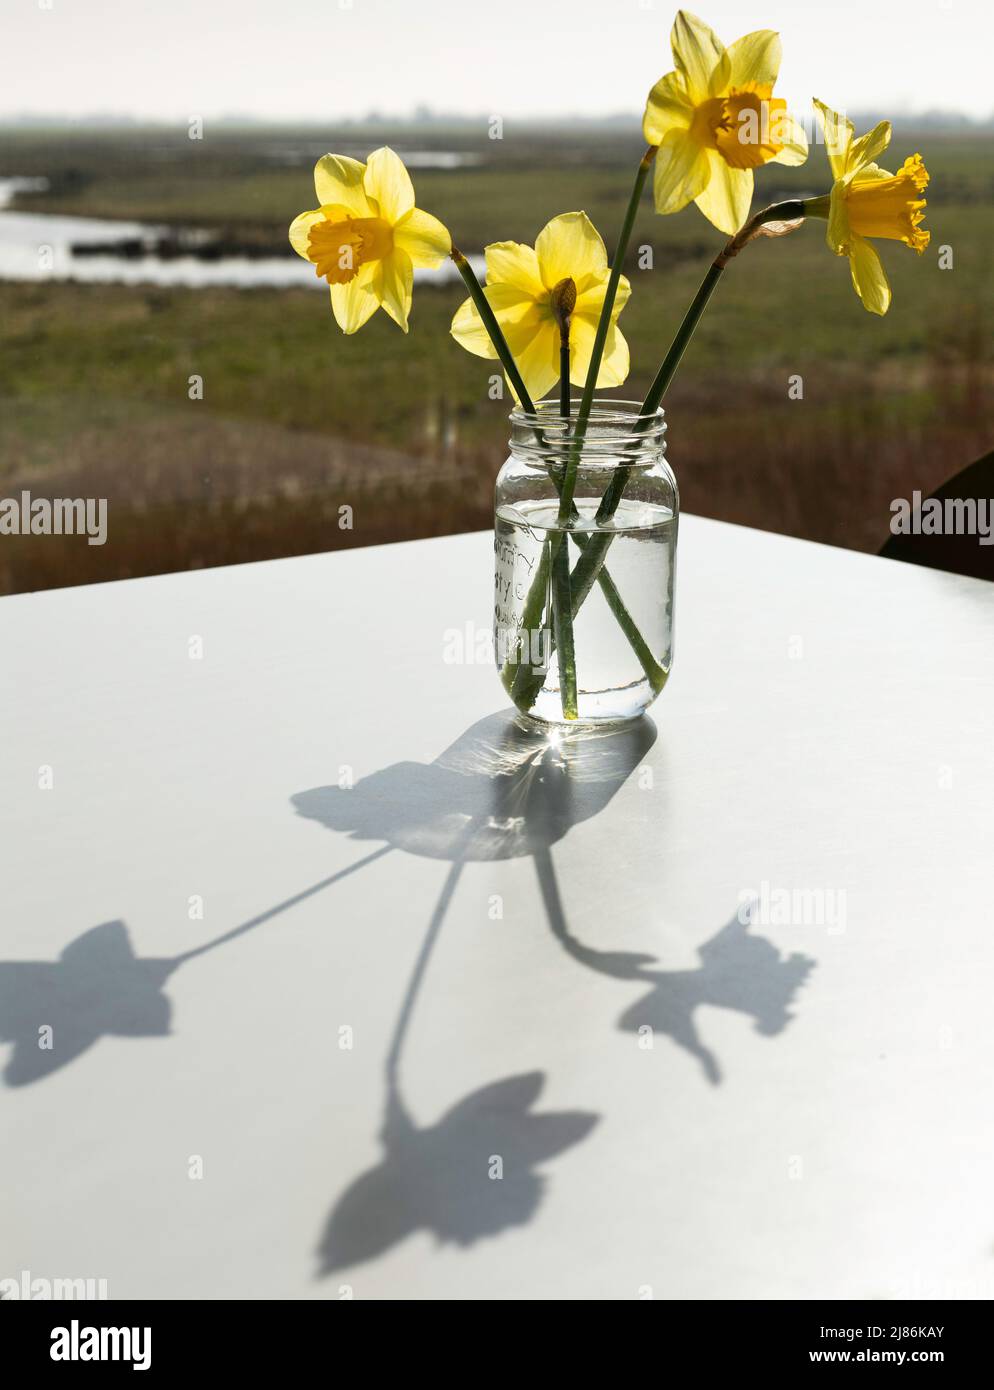 Glasbehälter mit 4 Narzissen auf einem weißen Tisch, mit Sonnenlicht und Schatten, Welney Wetlands, Wisbech, England Stockfoto